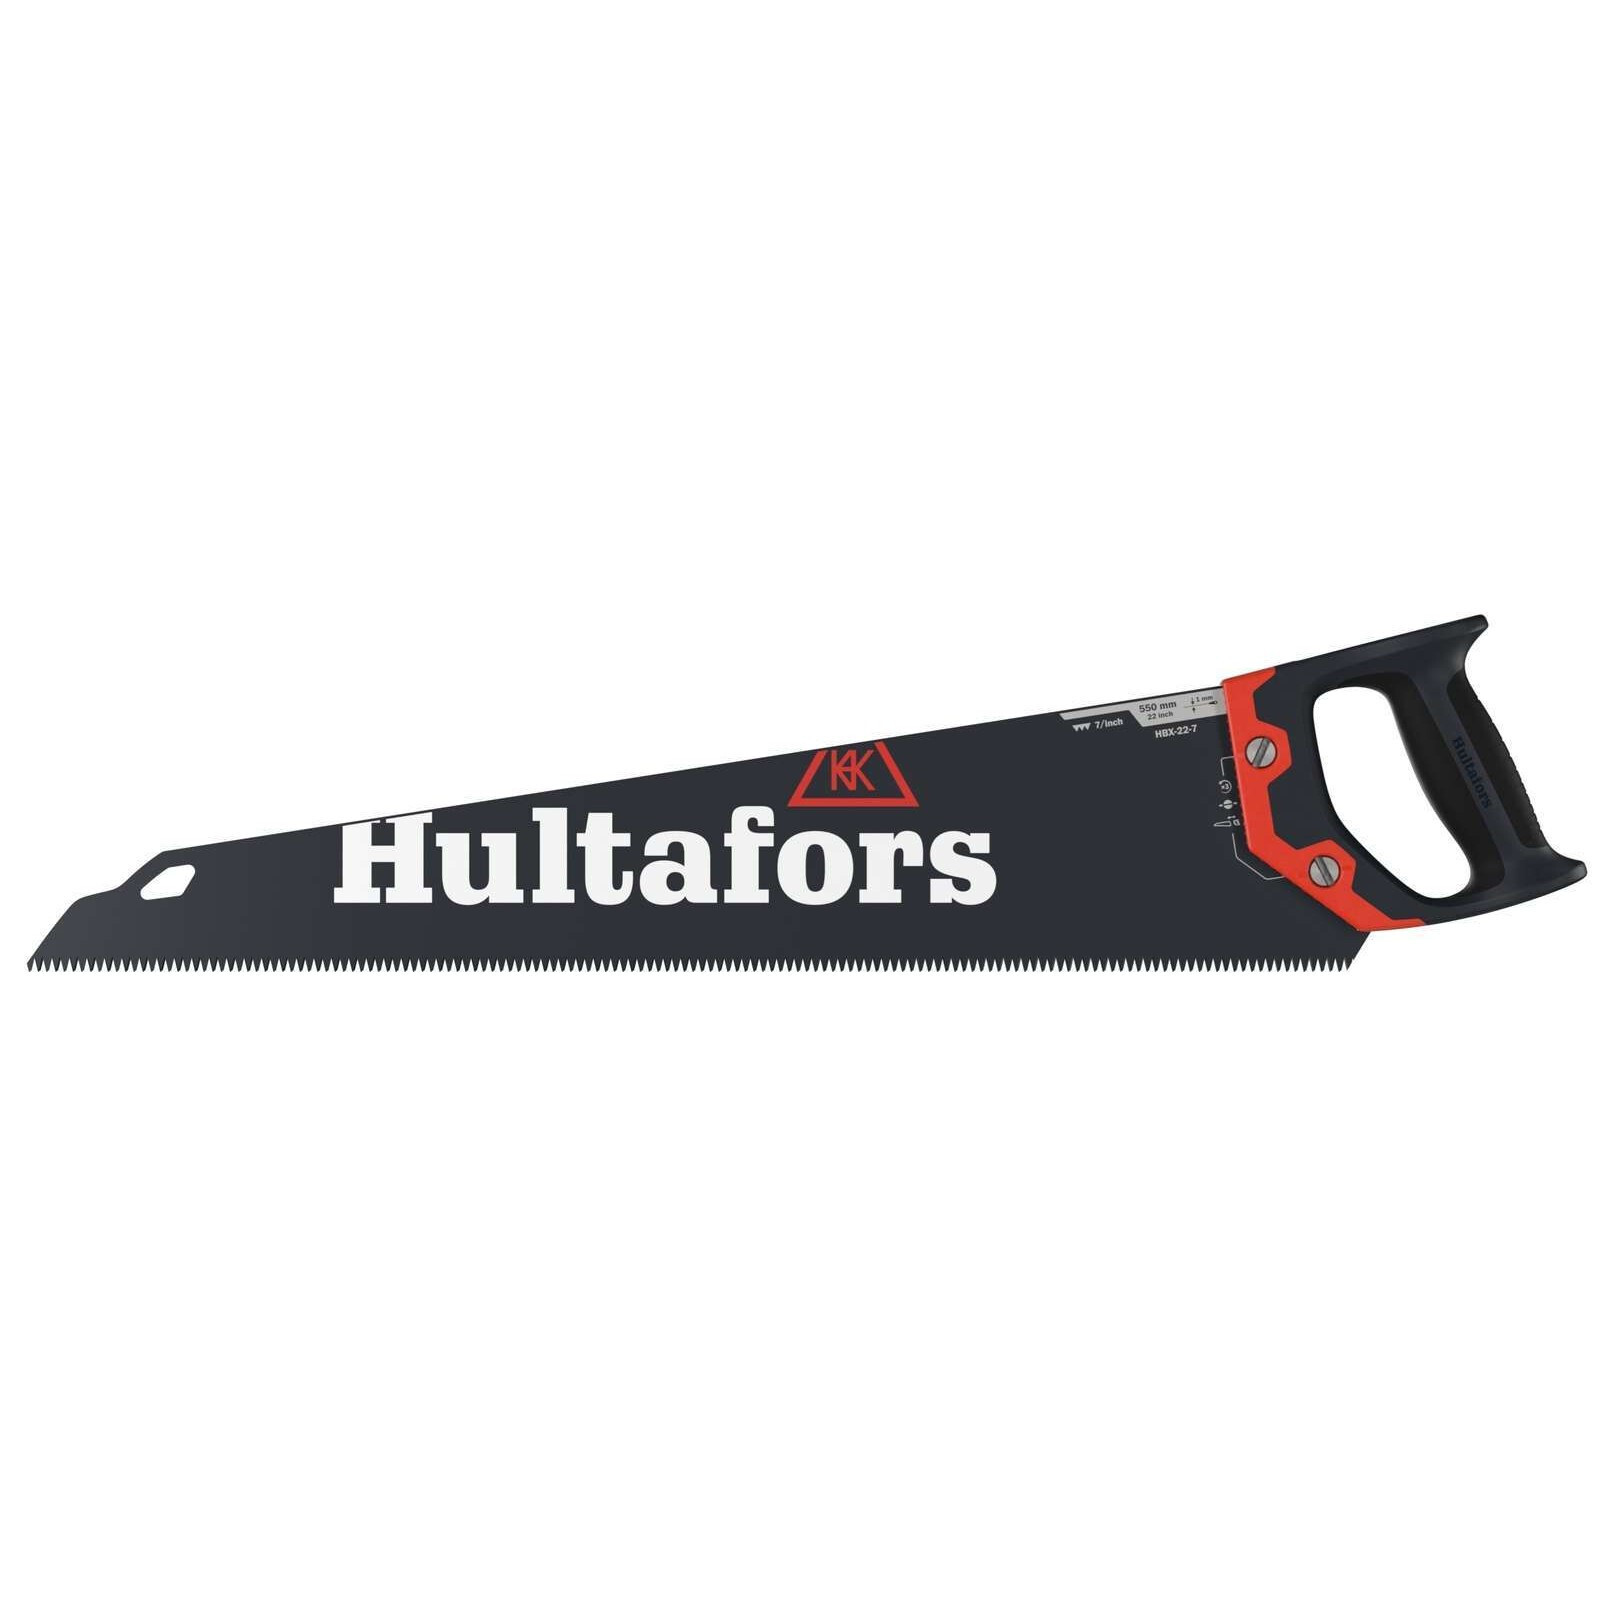 Ručná píla Hultafors HBX - veľkosť: 22-7, farba: čierna/červená